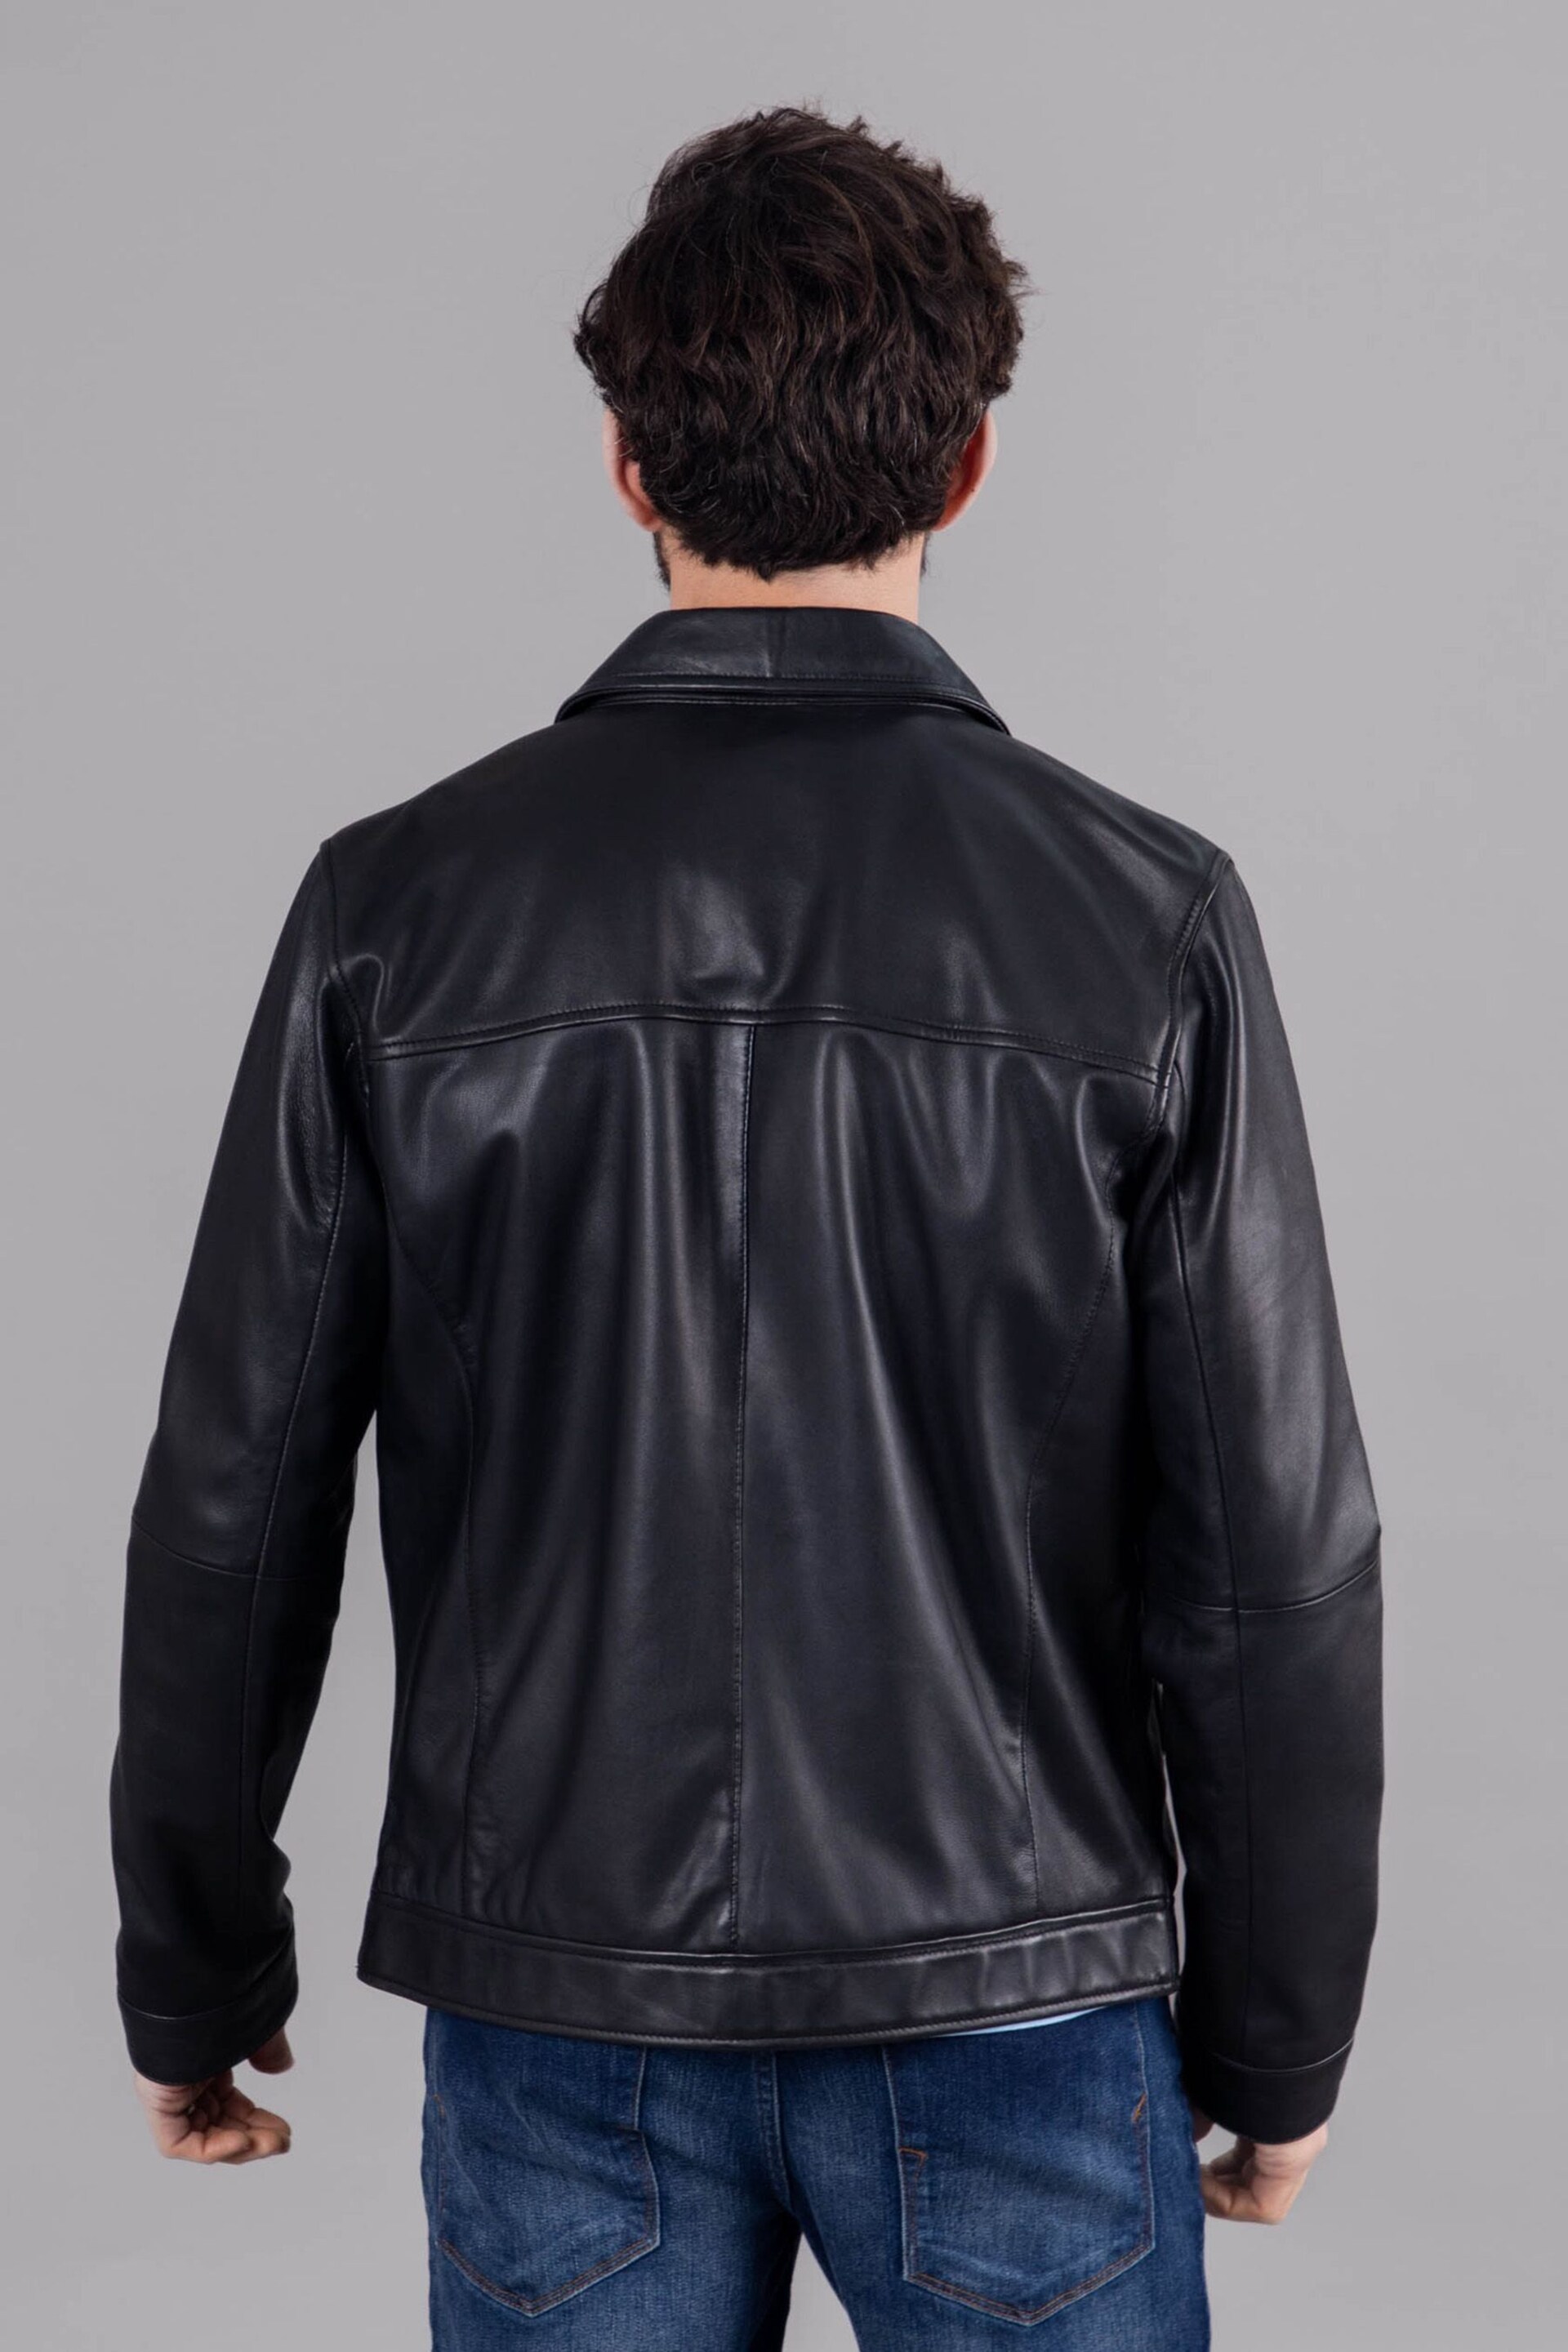 Lakeland Leather Black Renwick Collared Leather Jacket - Image 2 of 12